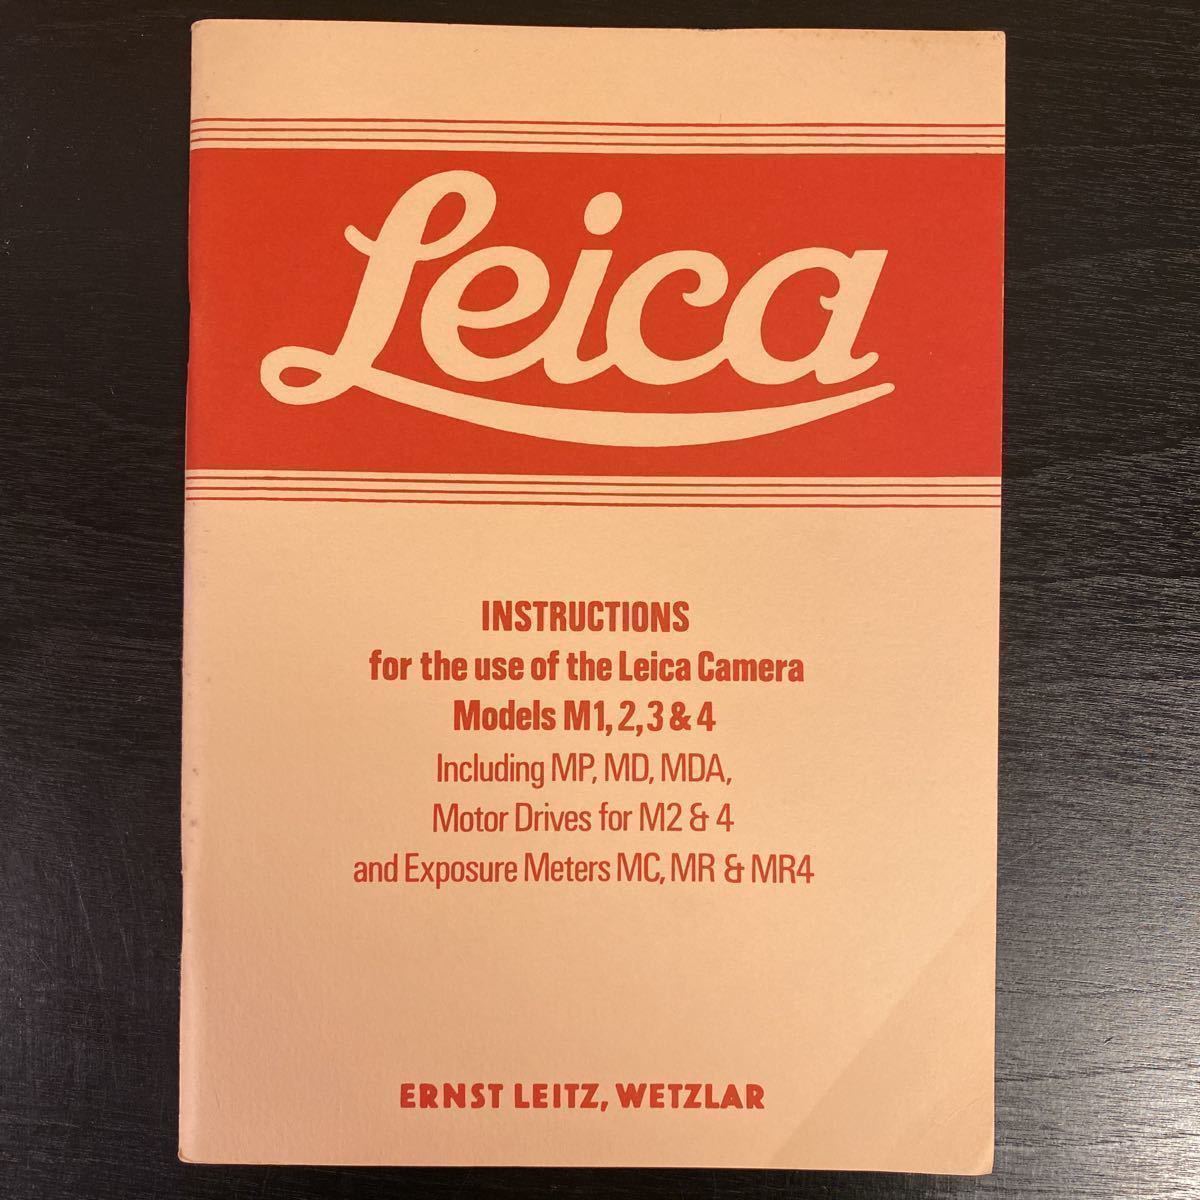 中古 ライカ Leica 関連希少資料 Instructions for the use of the Leica Camera Models M1,2,3&4 などなど